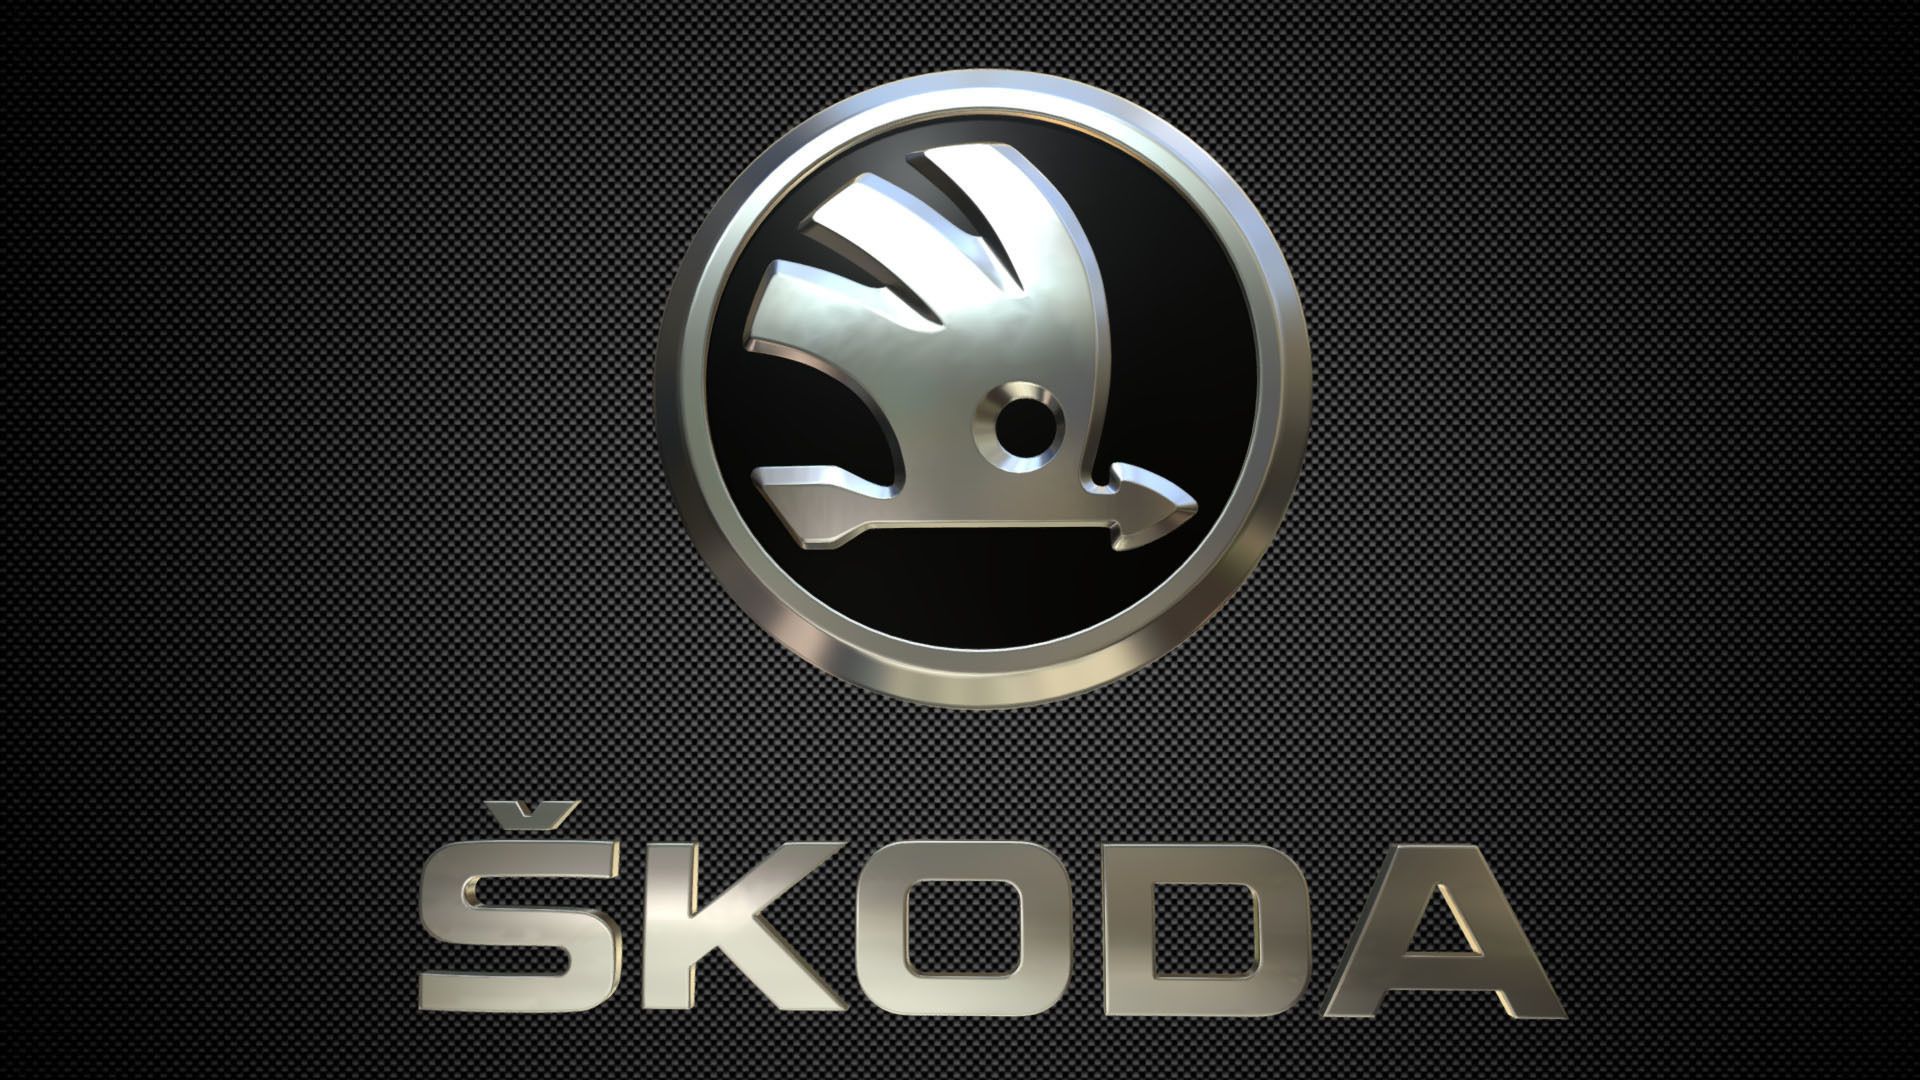 skoda logo 2019, Luxury car logos, Skoda